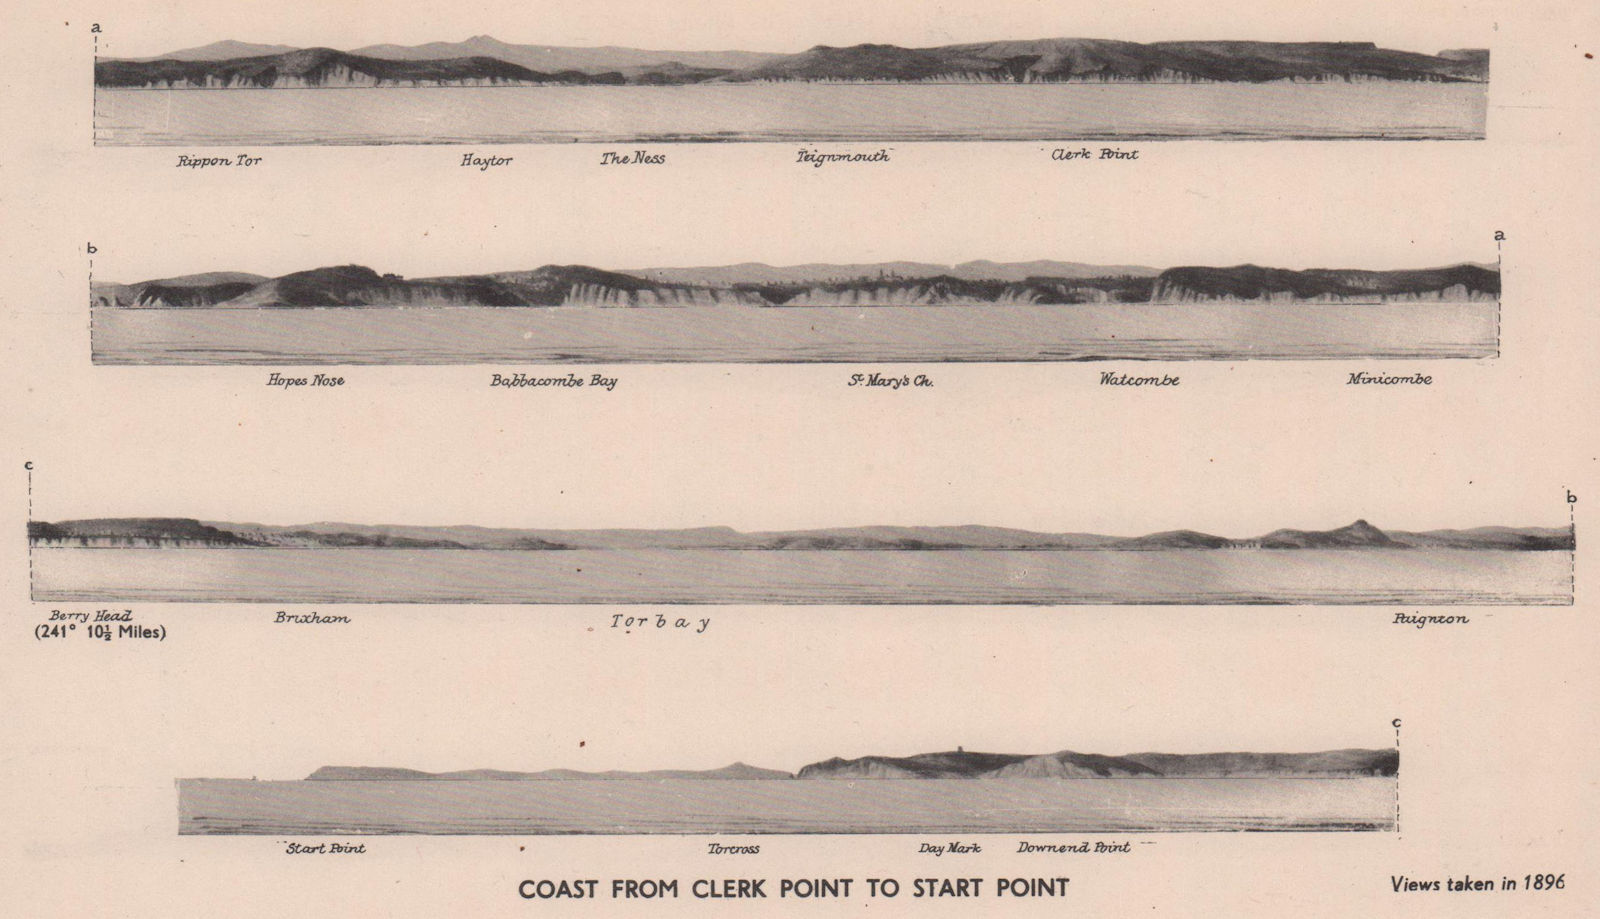 Clerk Point - Start Point. Teignmouth Brixham Devon coast profile ADMIRALTY 1943